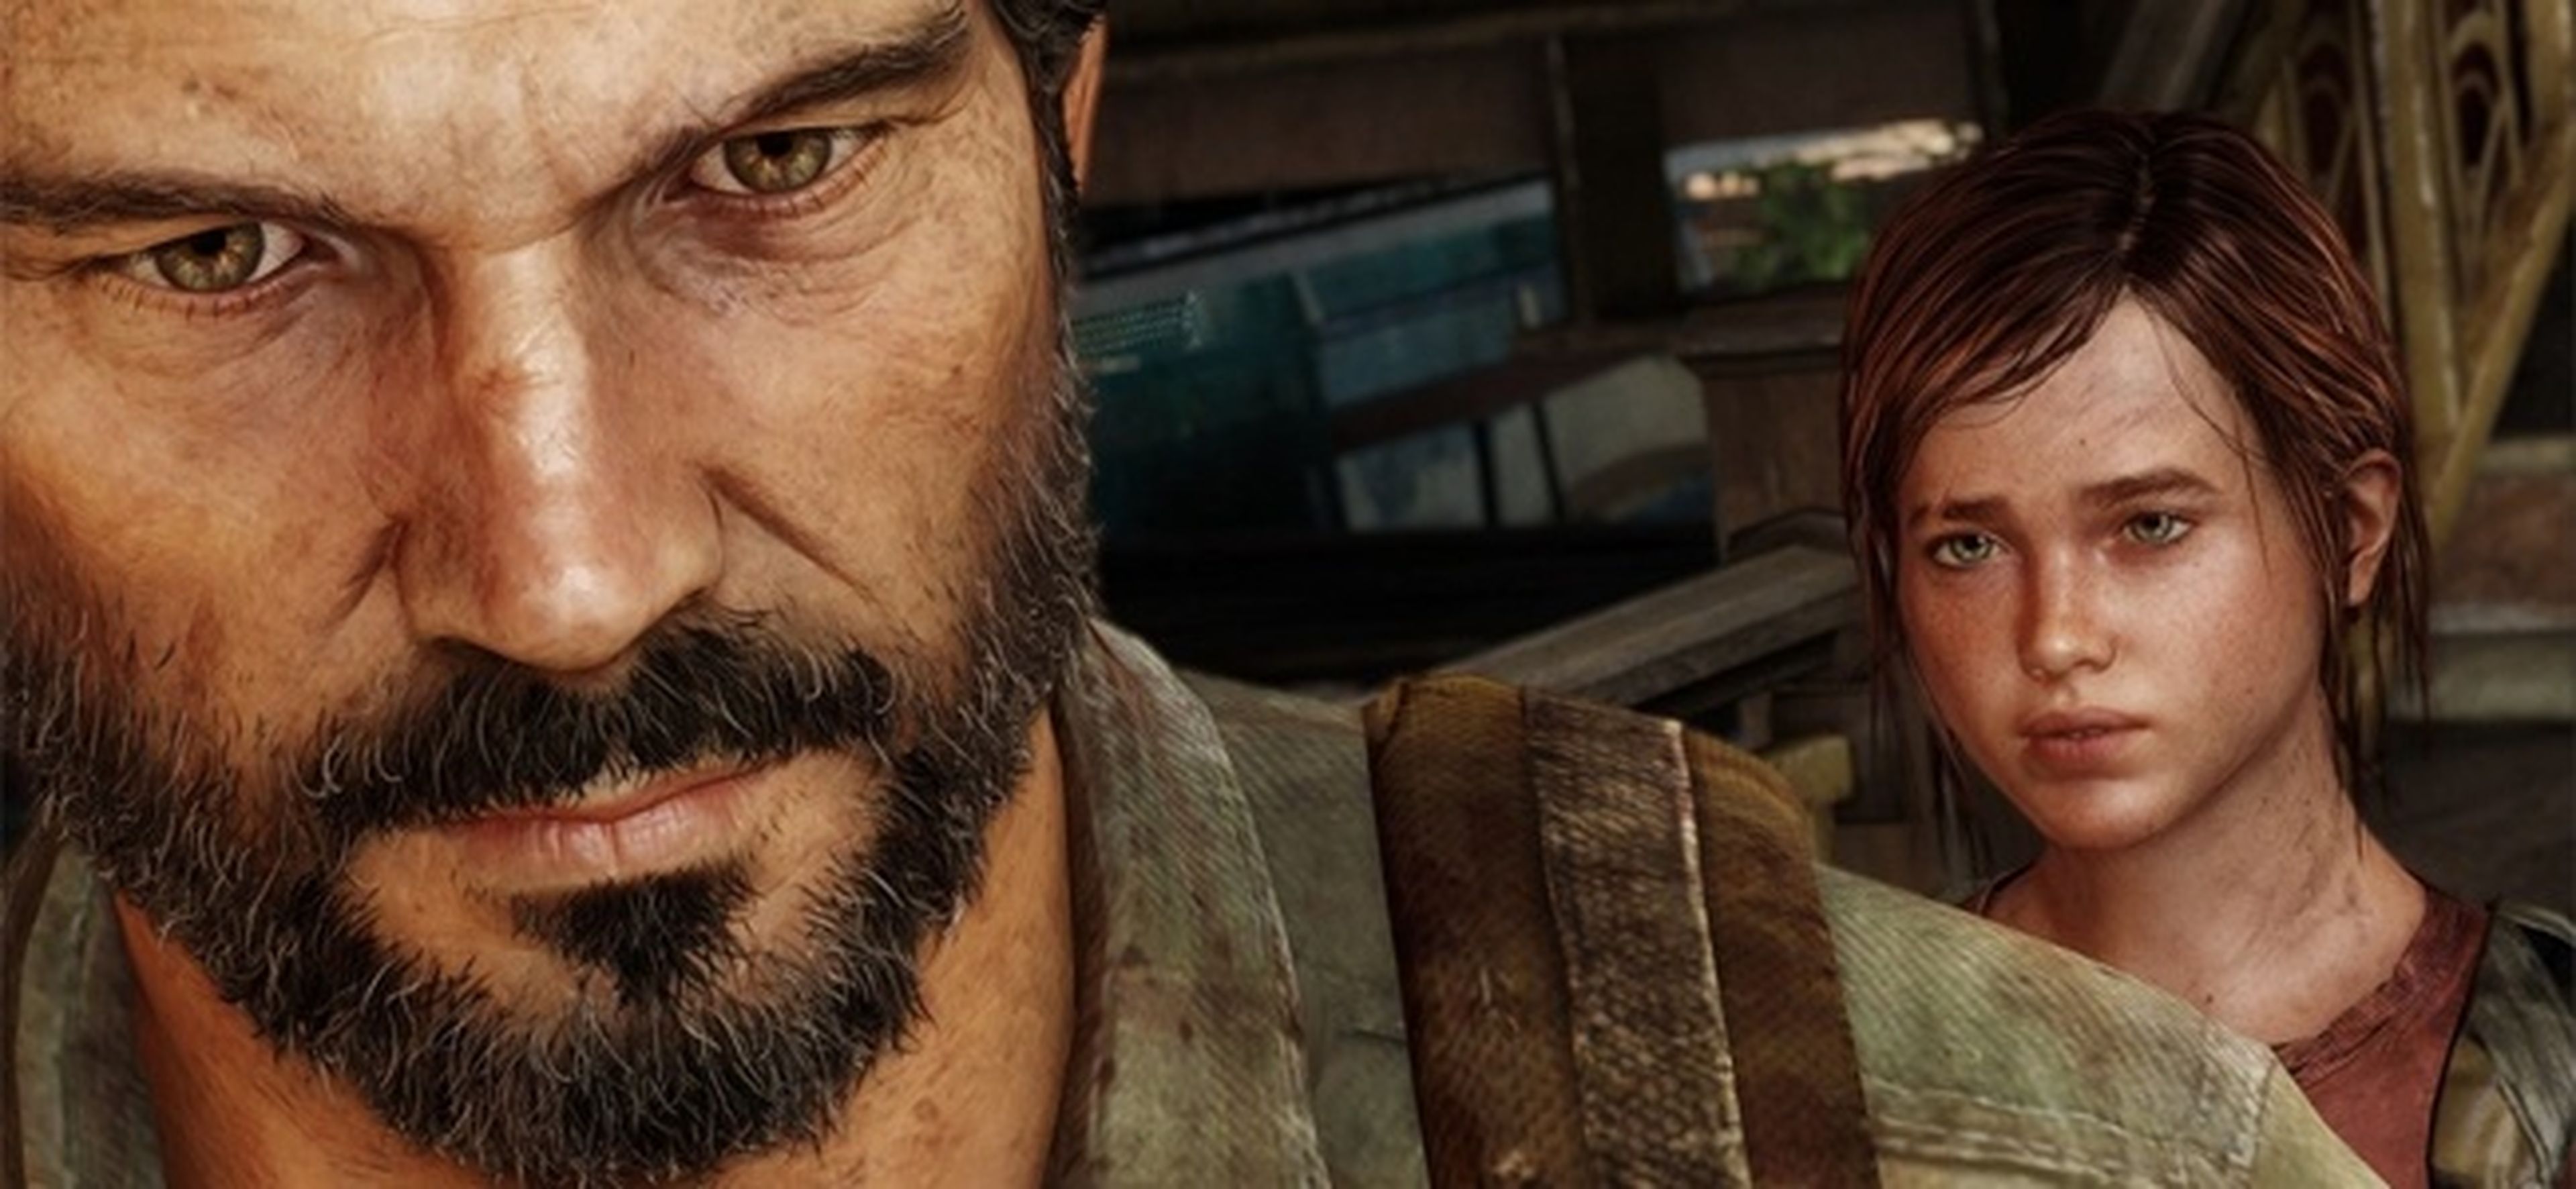 Mejoras y contenidos de The Last of Us Remastered en PS4